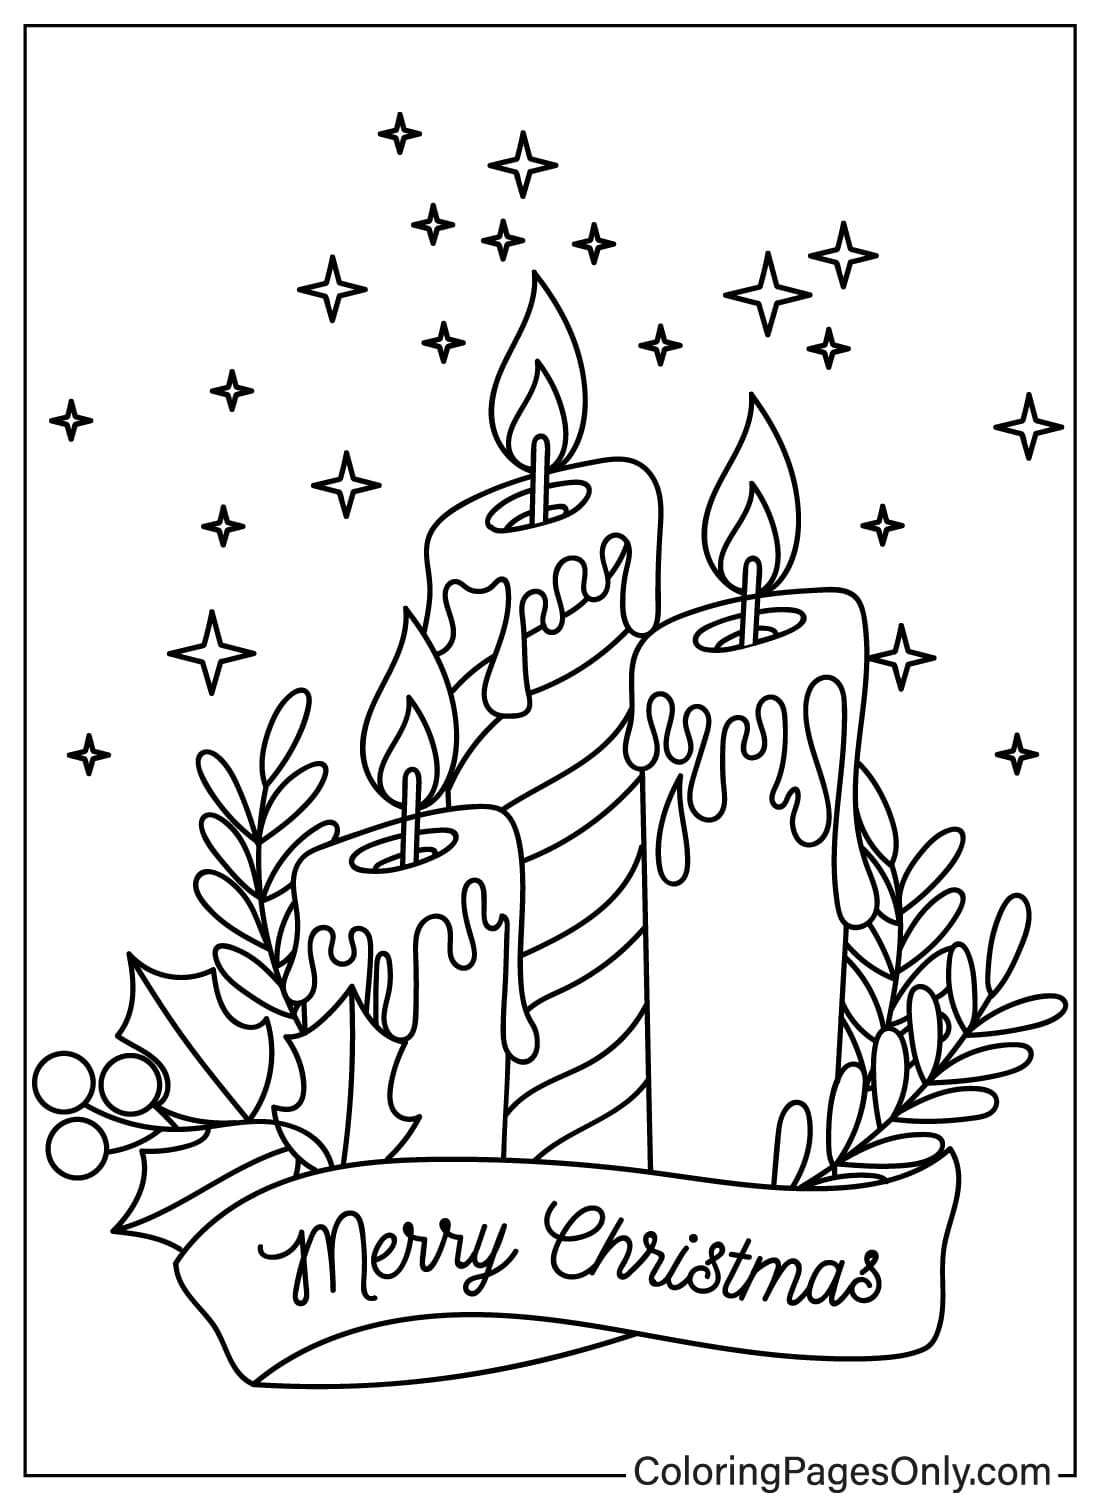 شموع عيد الميلاد صفحة تلوين مجانية قابلة للطباعة من شموع عيد الميلاد